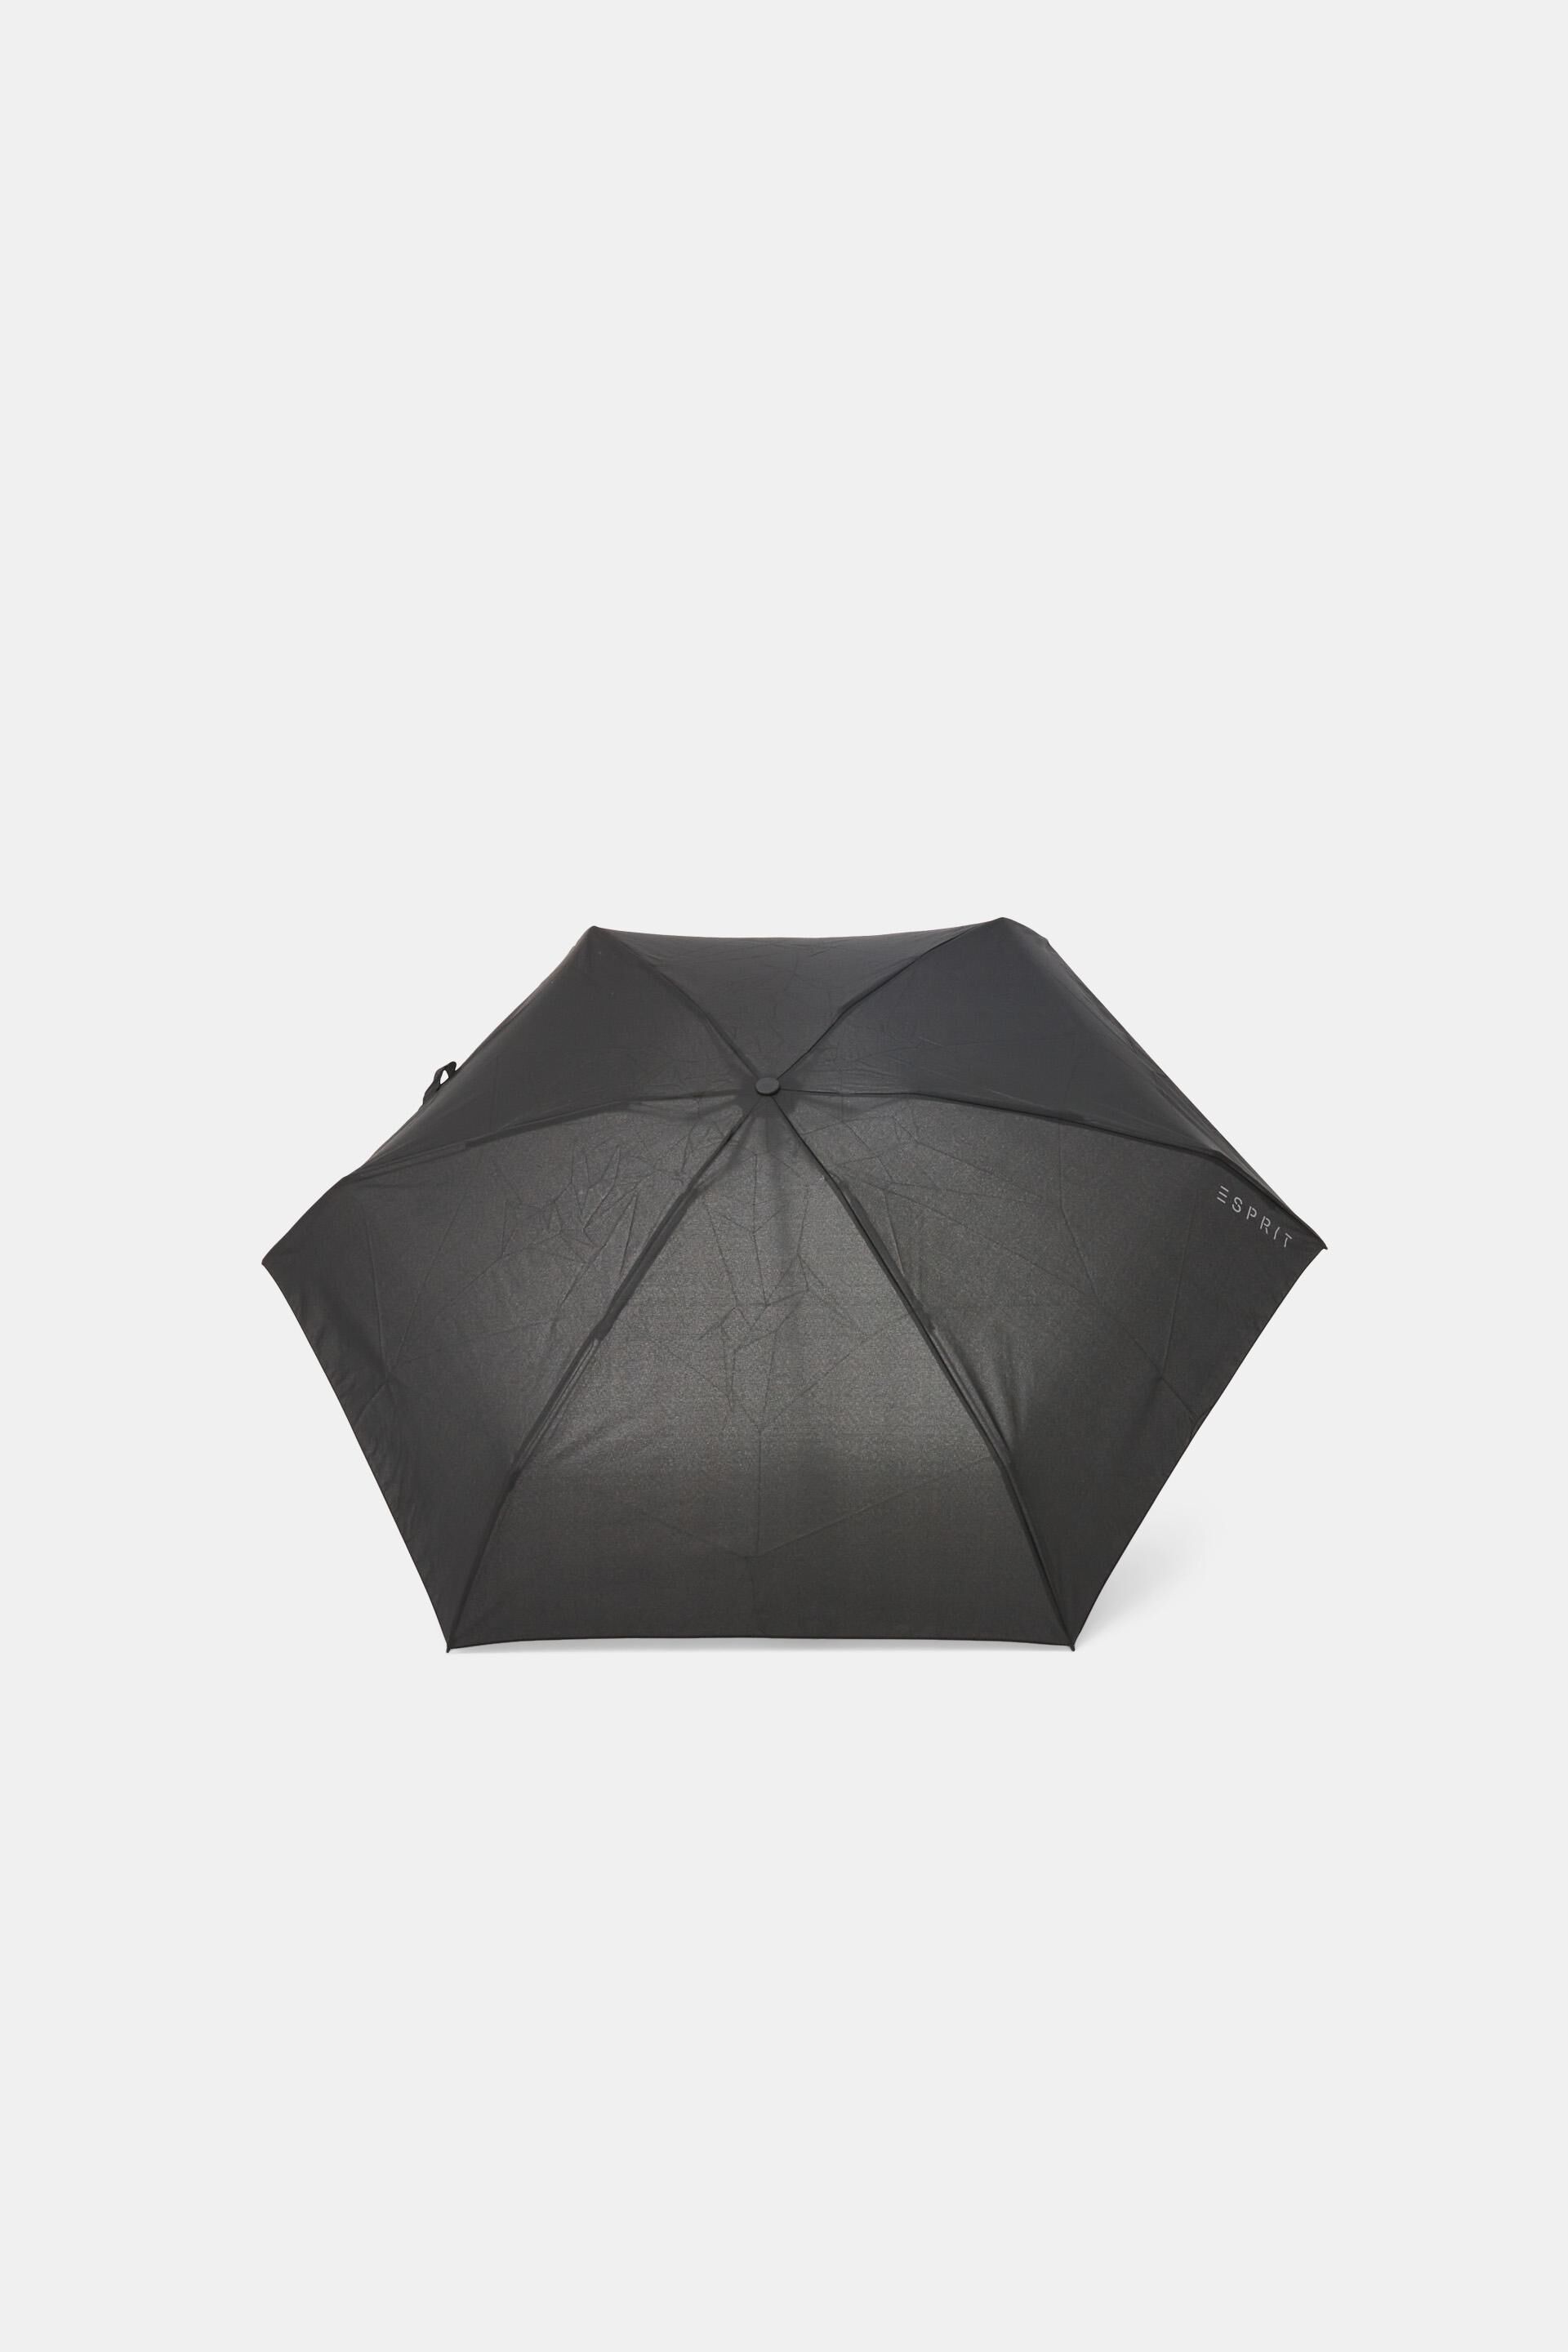 Esprit Plain mini umbrella pocket